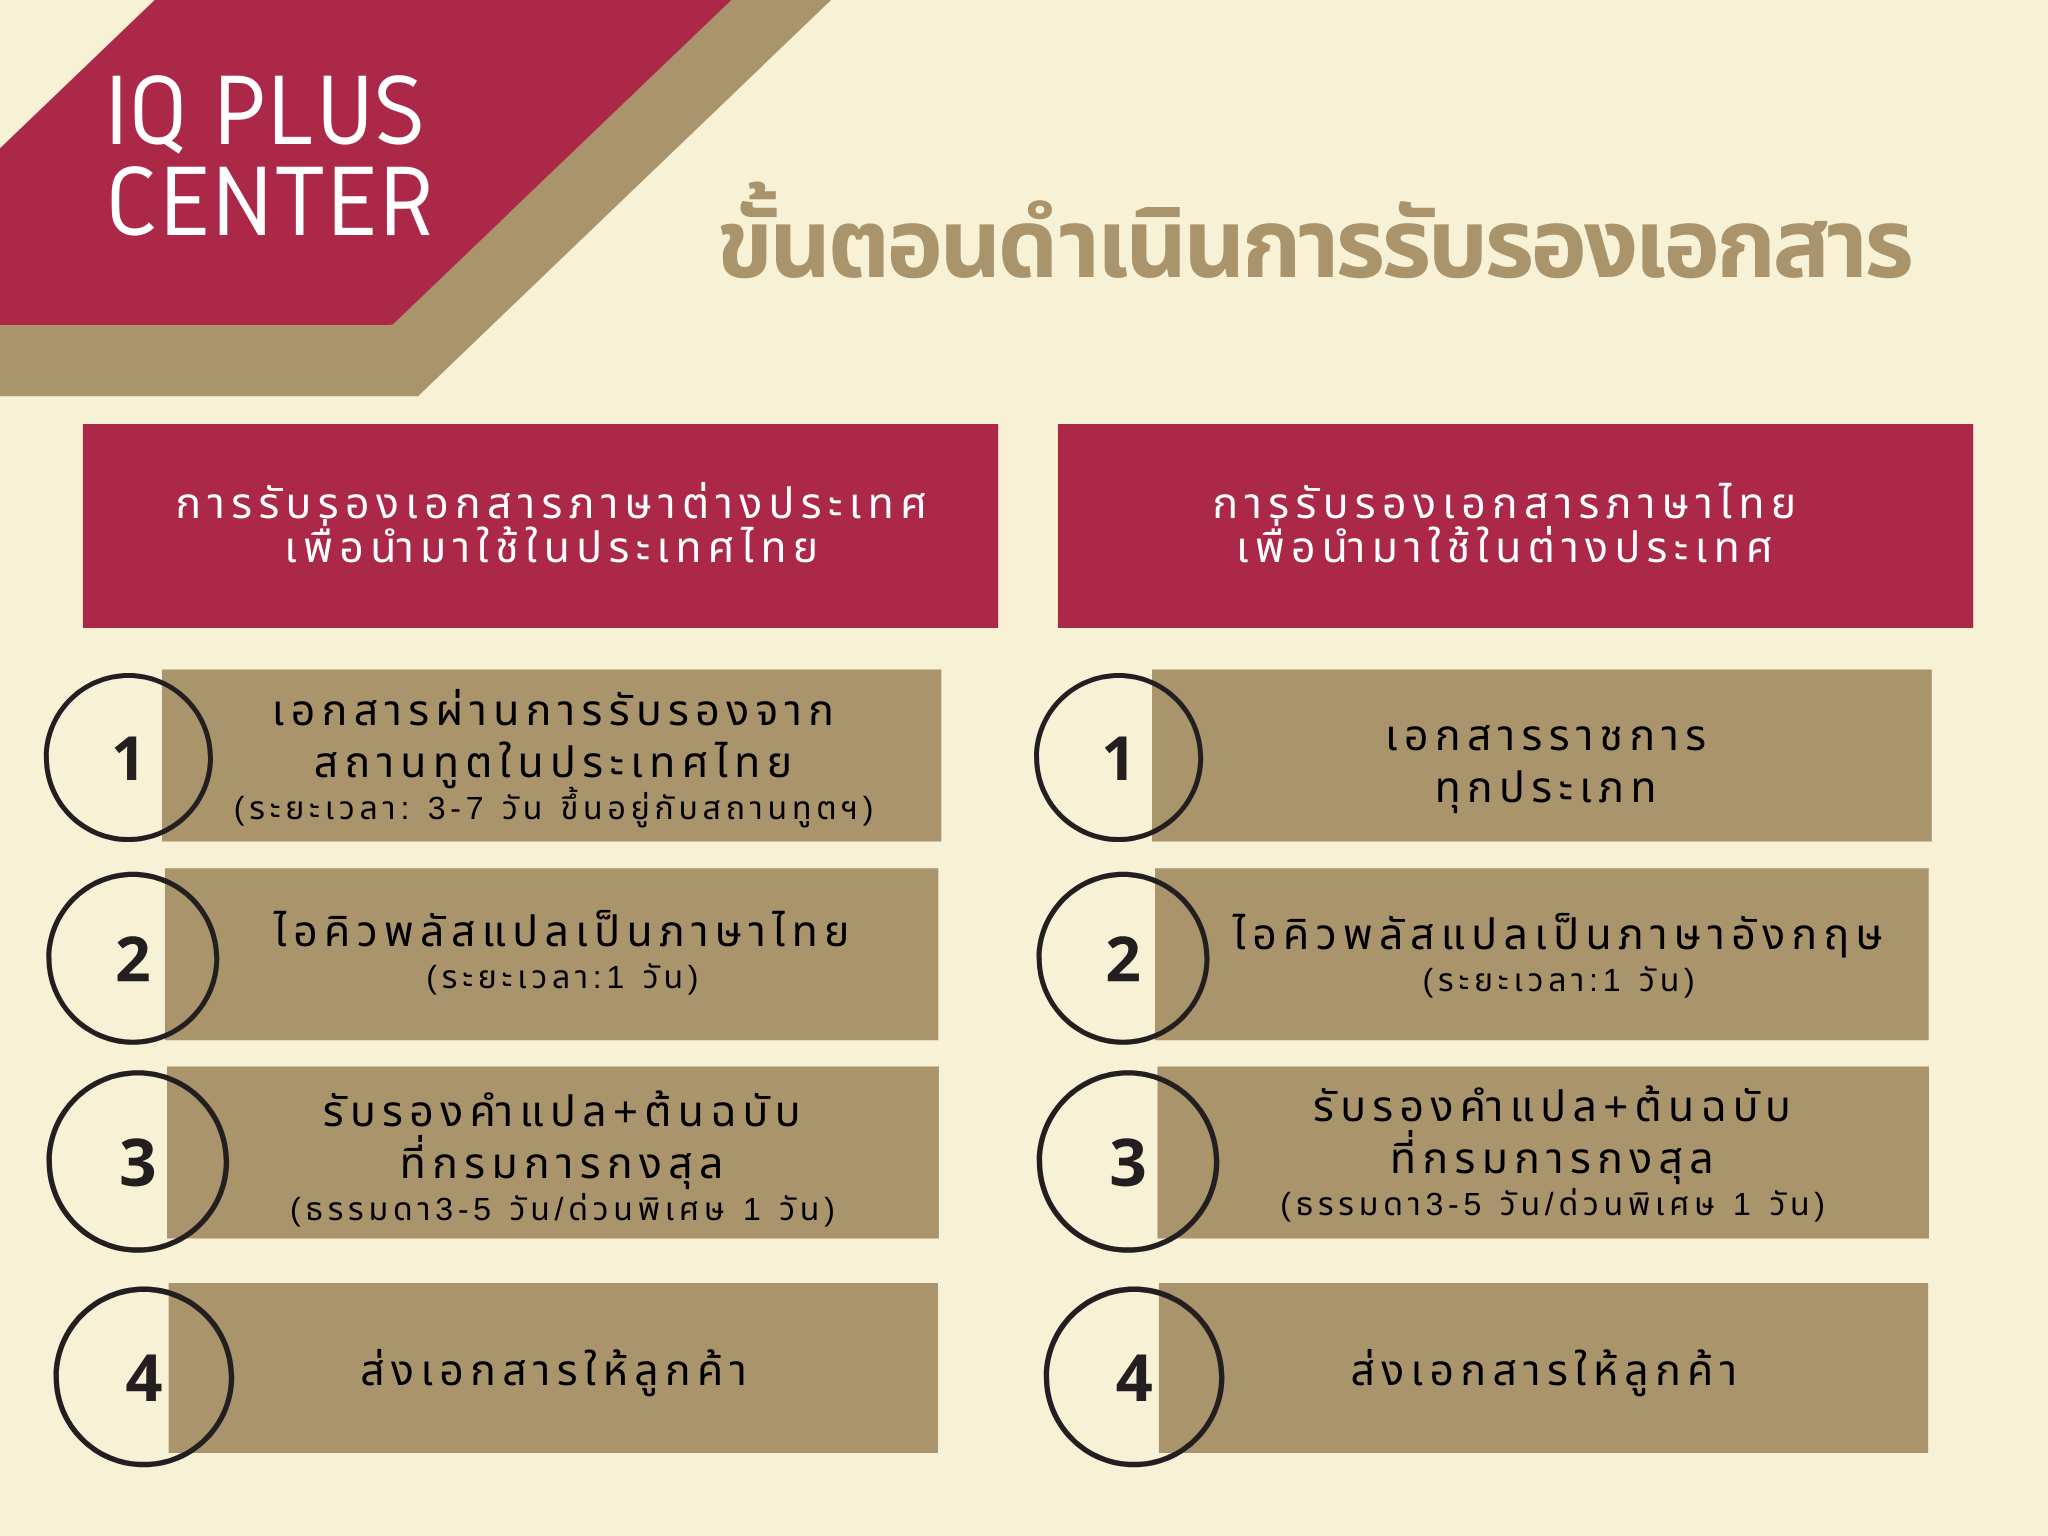 เปรียบเทียบ-4ขั้นตอนการรับรองเอกสารภาษาต่างประเทศ-กับ 4ขั้นตอนการรับรองเอกสารภาษาไทย